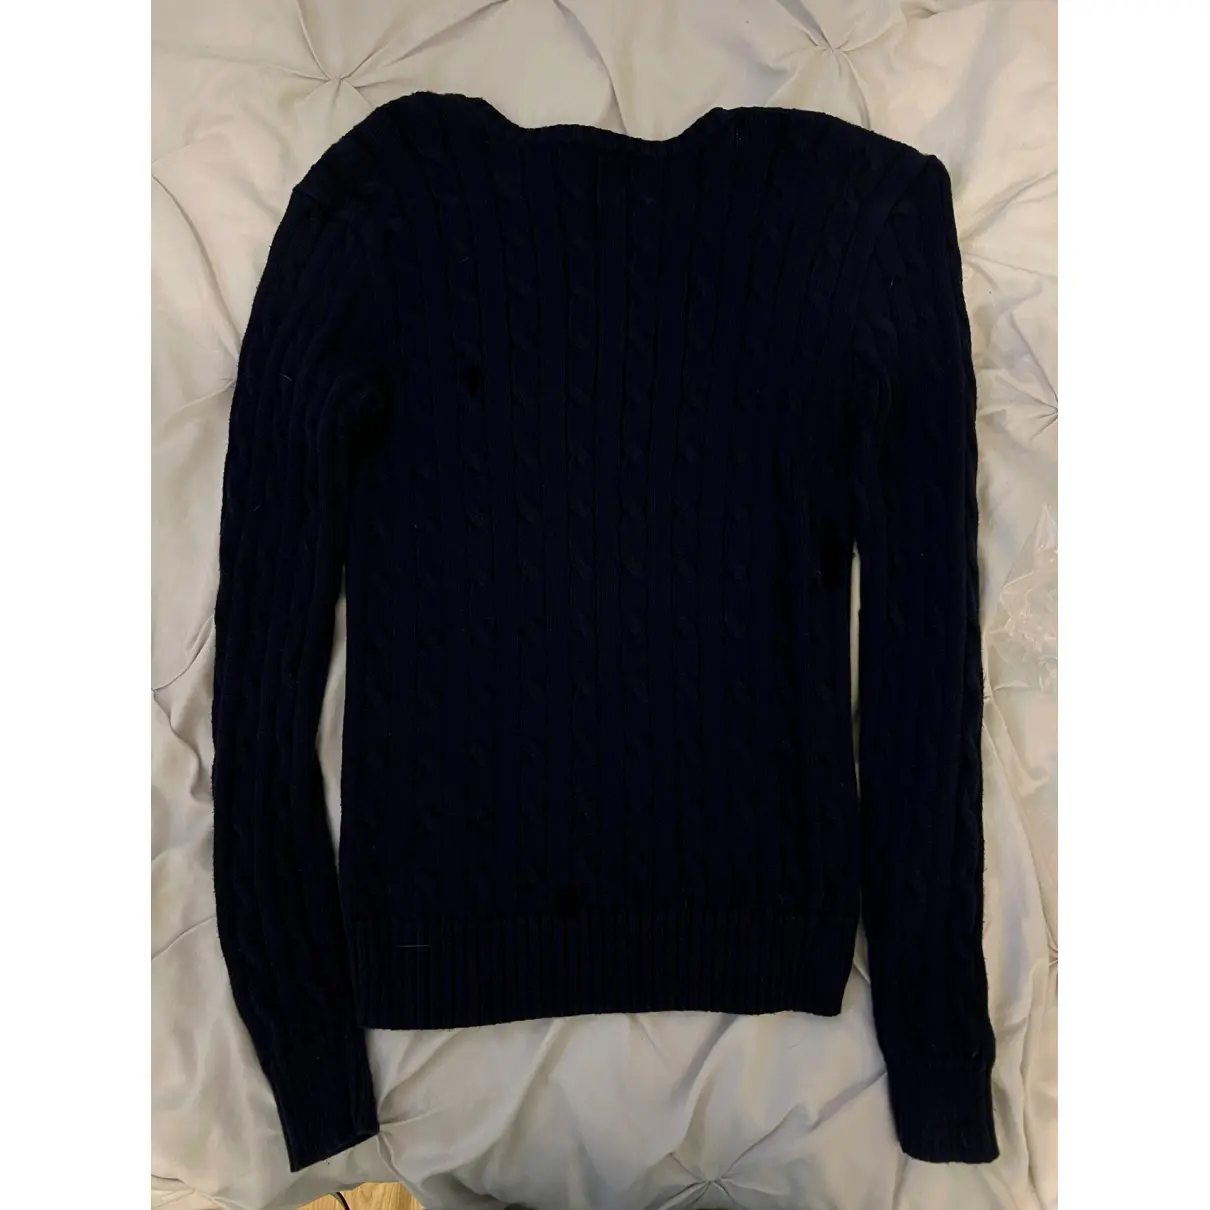 Buy Polo Ralph Lauren Cashmere sweatshirt online